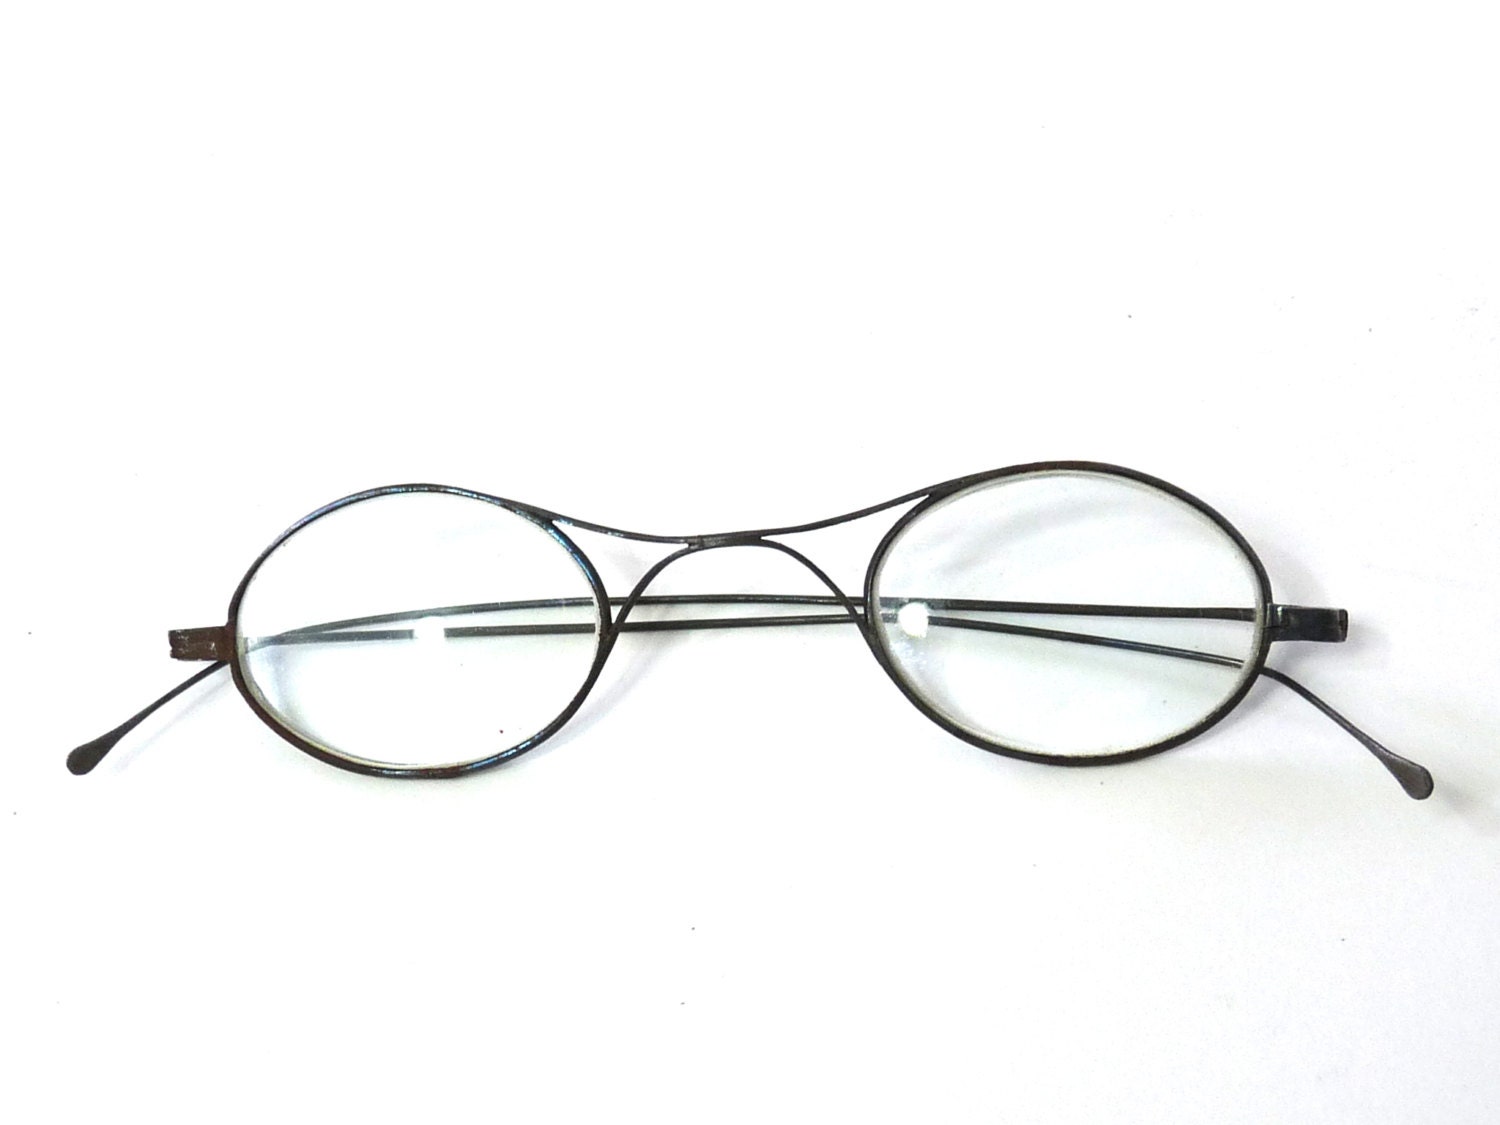 Antique Eyeglasses Wire Rim Original Reading Glasses 1800s